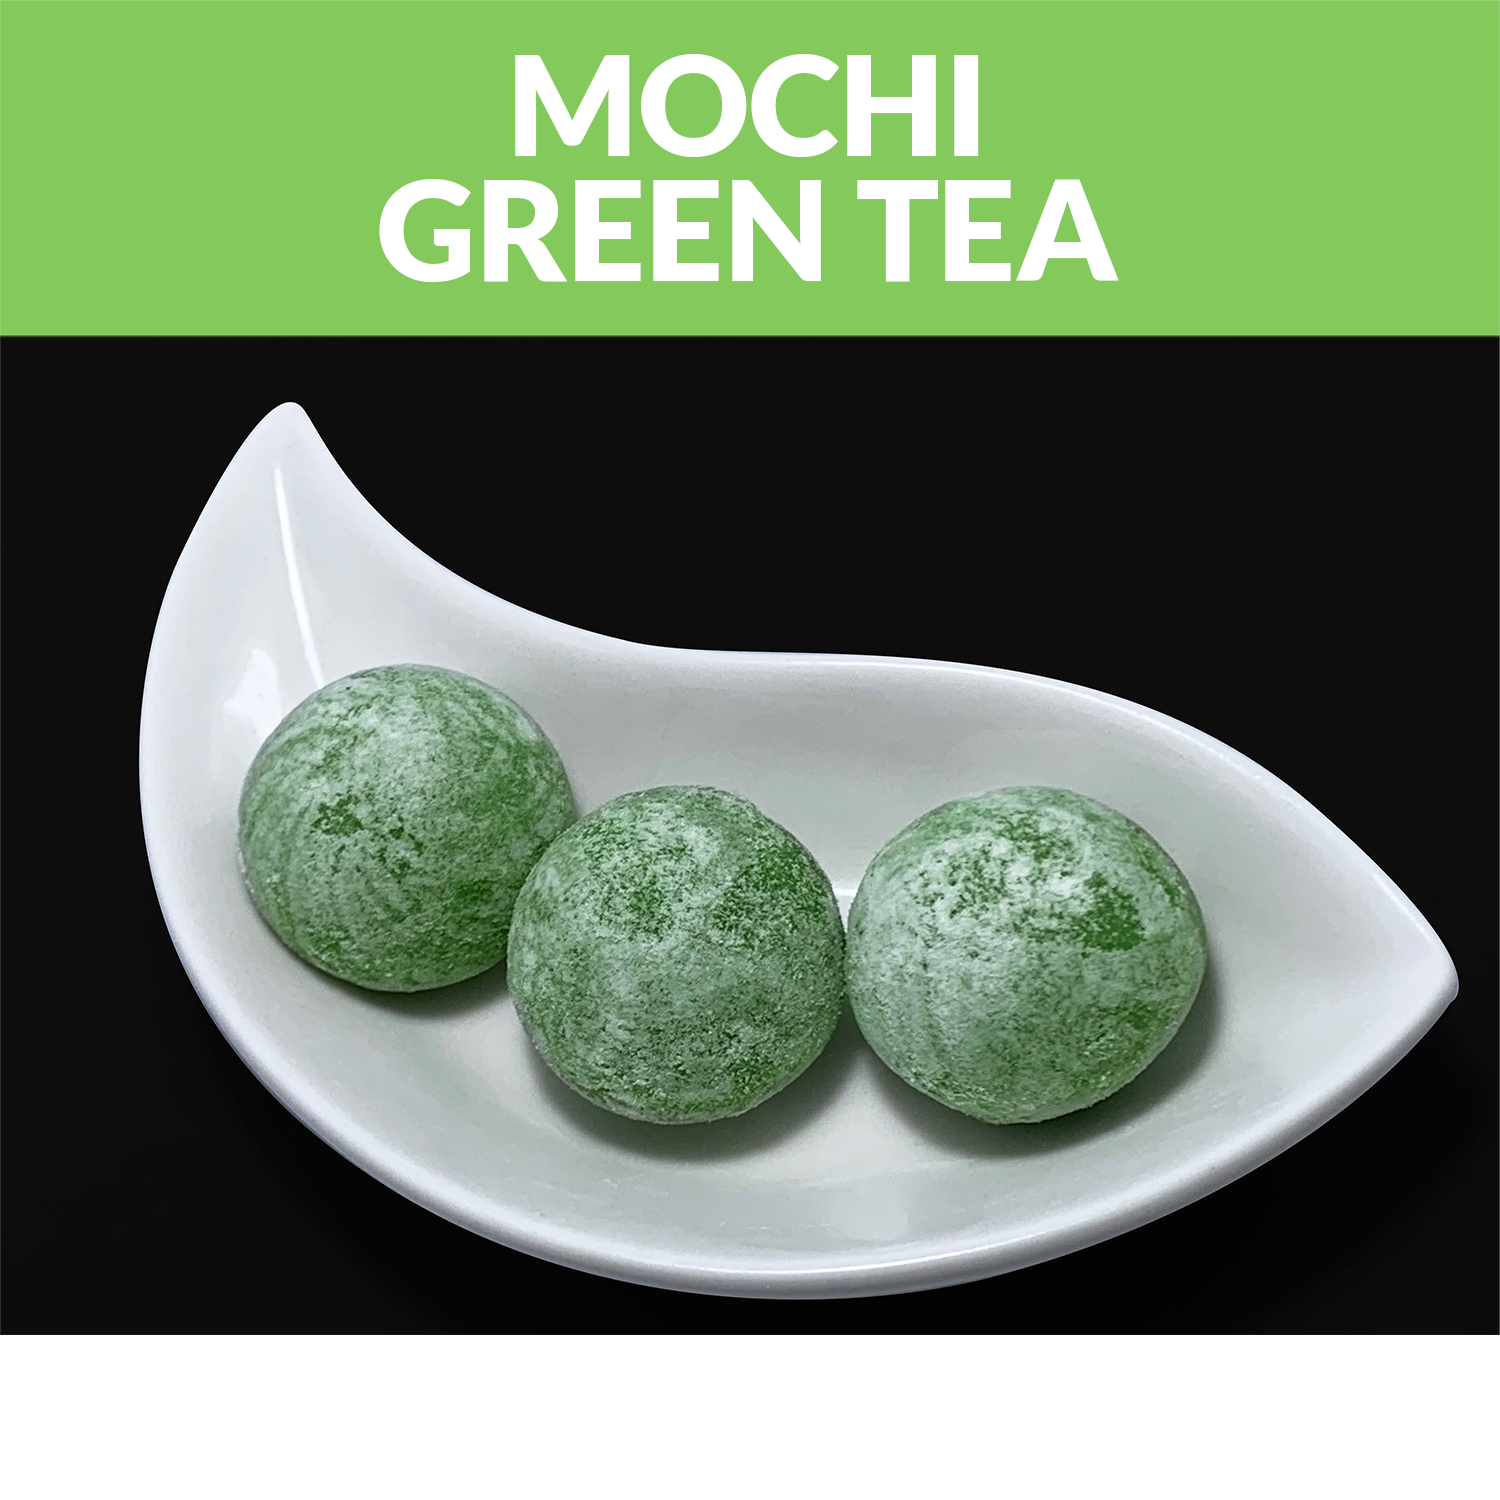 Products-Mochi-Mochi-Green-Tea.png